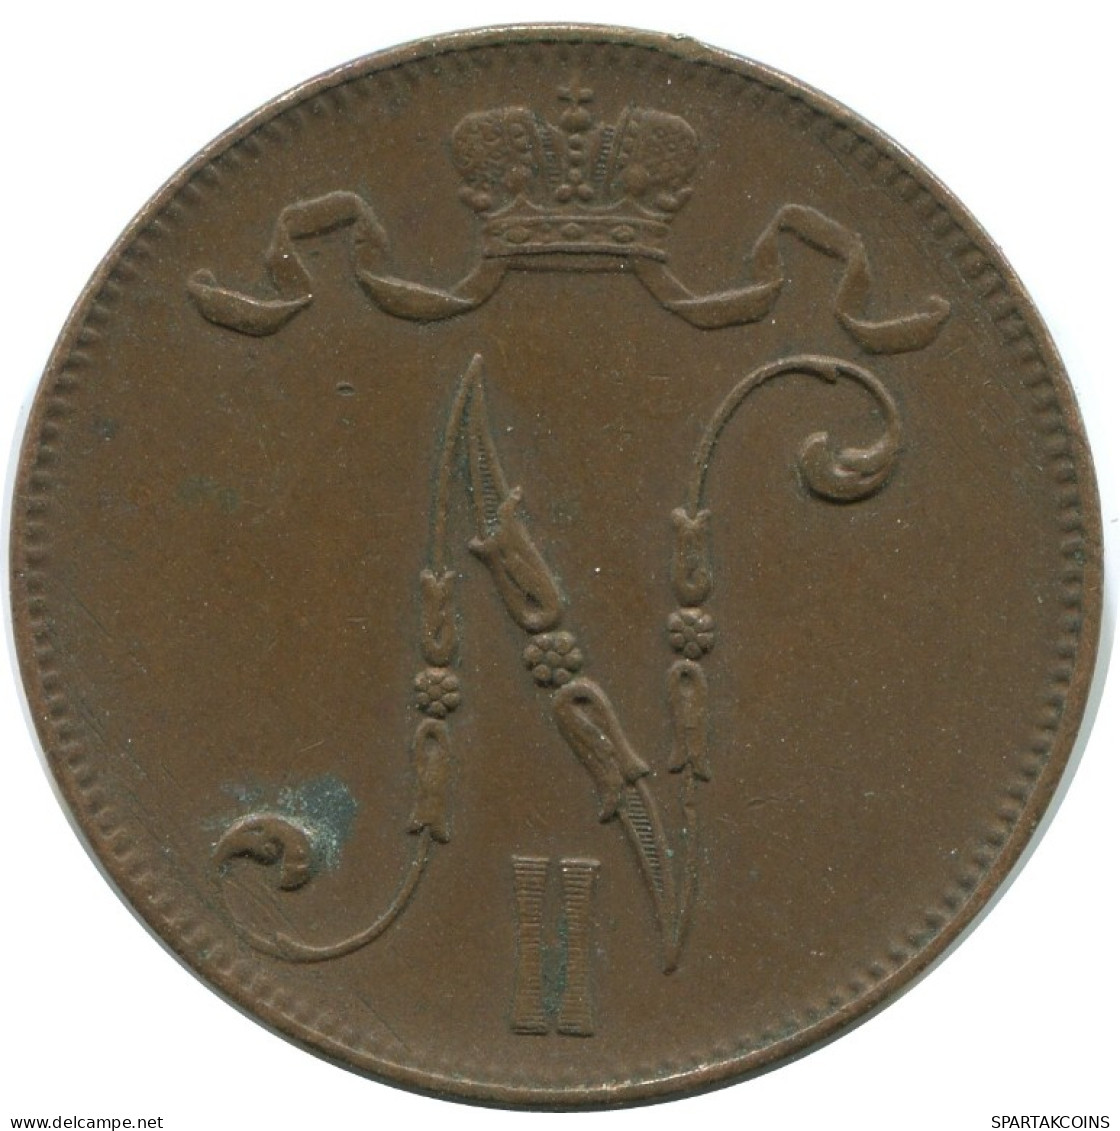 5 PENNIA 1916 FINLAND Coin RUSSIA EMPIRE #AB273.5.U.A - Finlandia